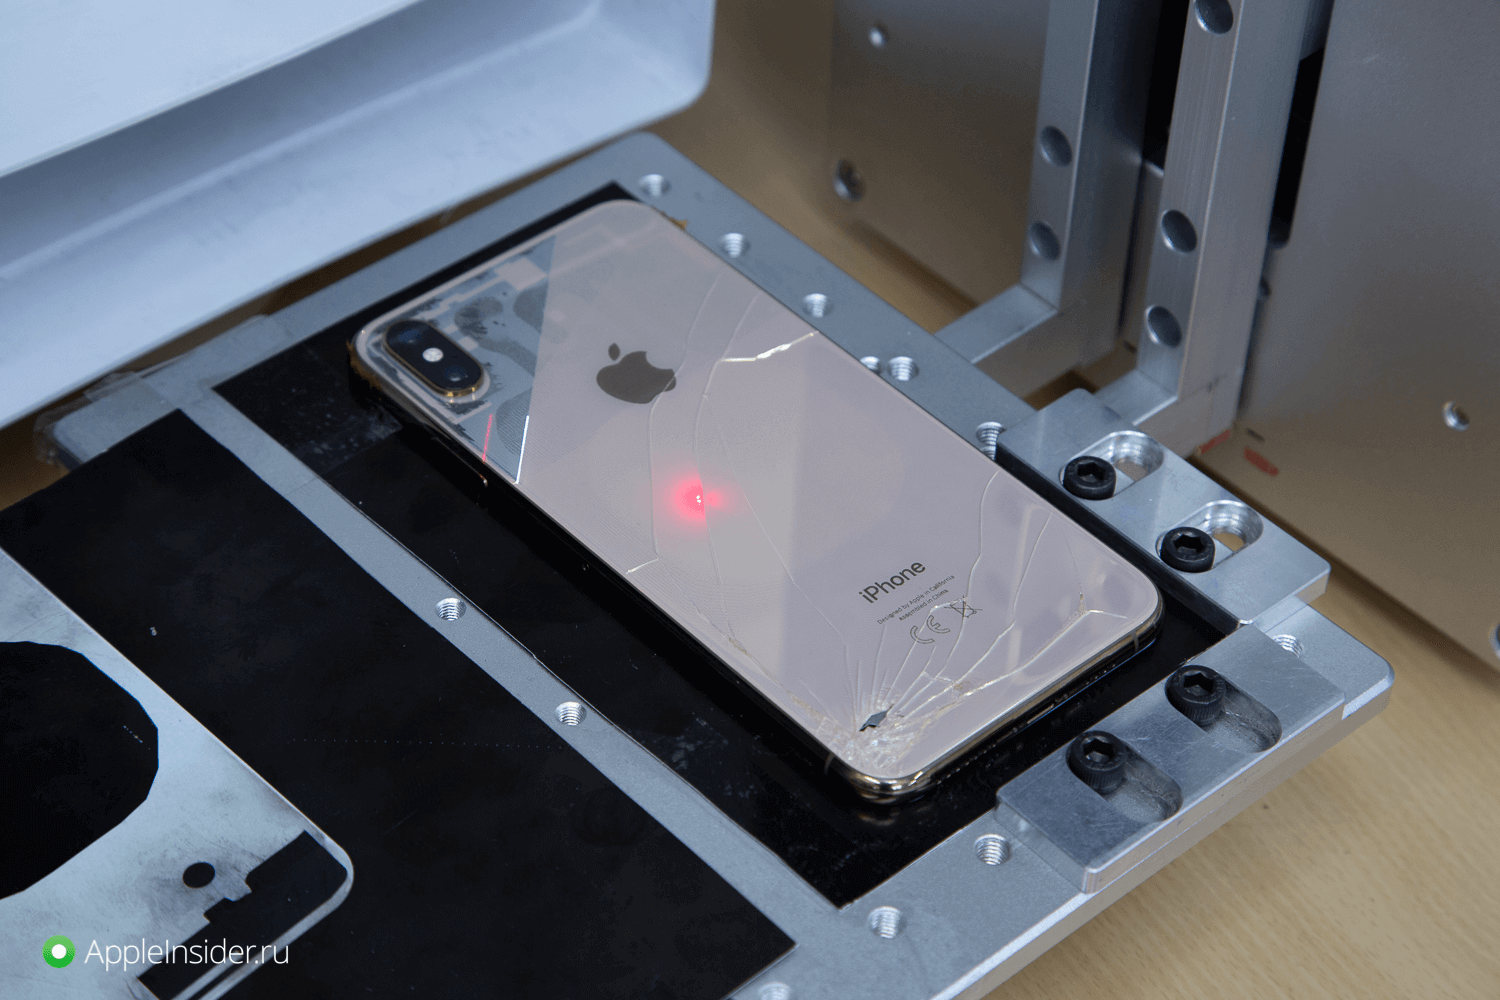 Разбили заднюю панель iPhone 12 Pro? Теперь её отремонтируют, а не заменят устройство